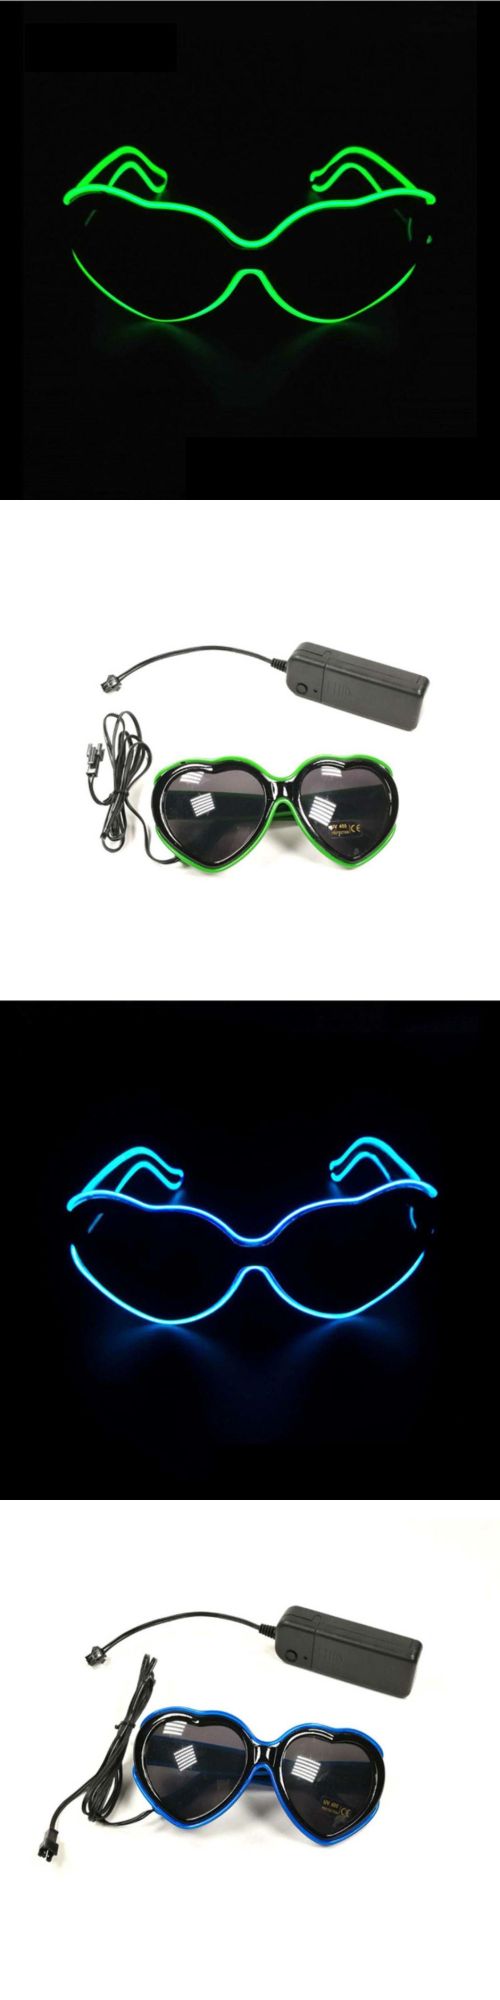 LED Luminous Heart EL Wire Glasses Rave LED Glasses Light